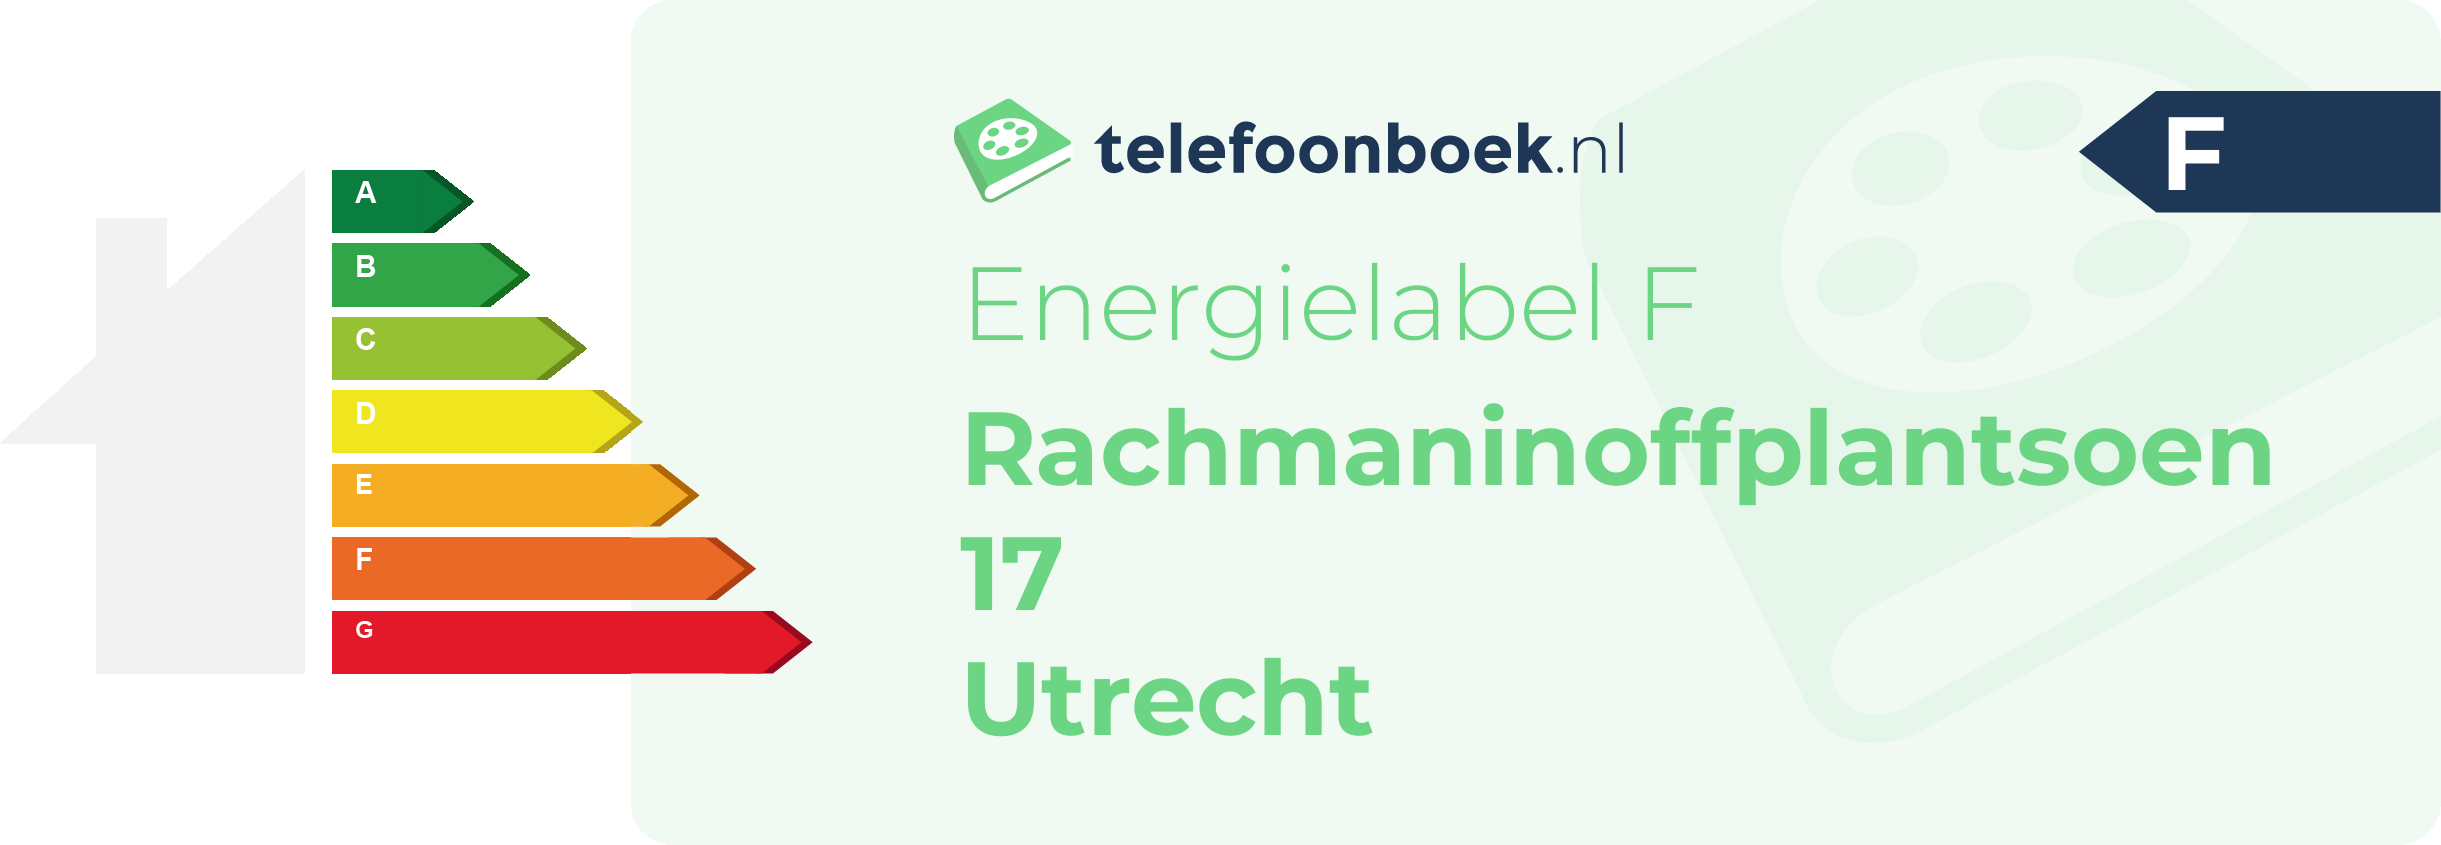 Energielabel Rachmaninoffplantsoen 17 Utrecht